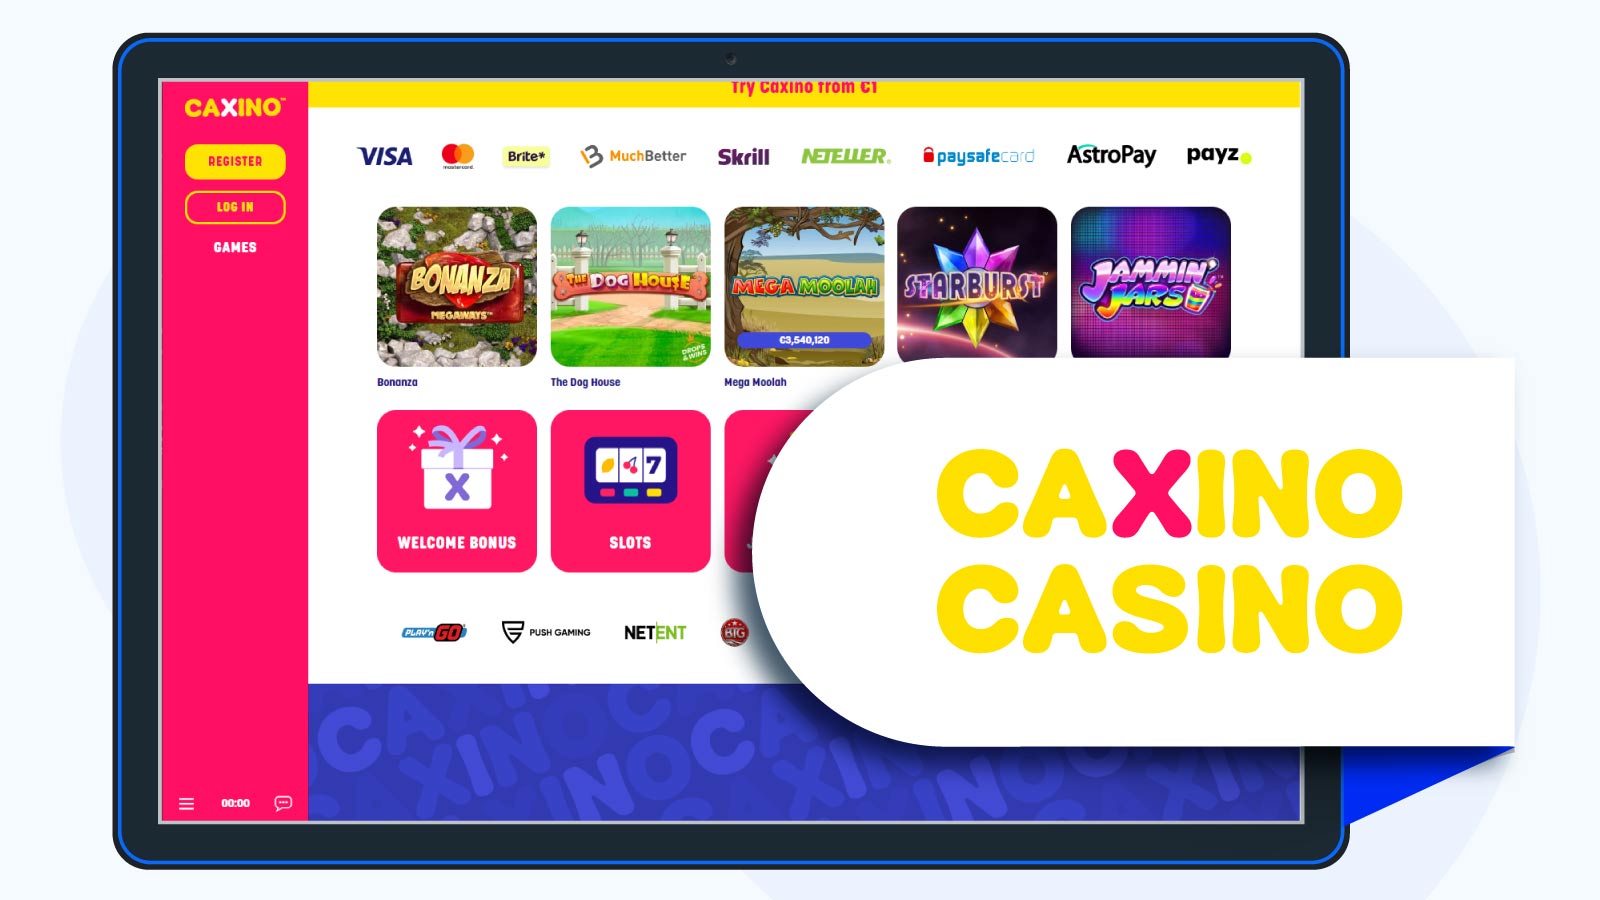 Caxino casino homepage